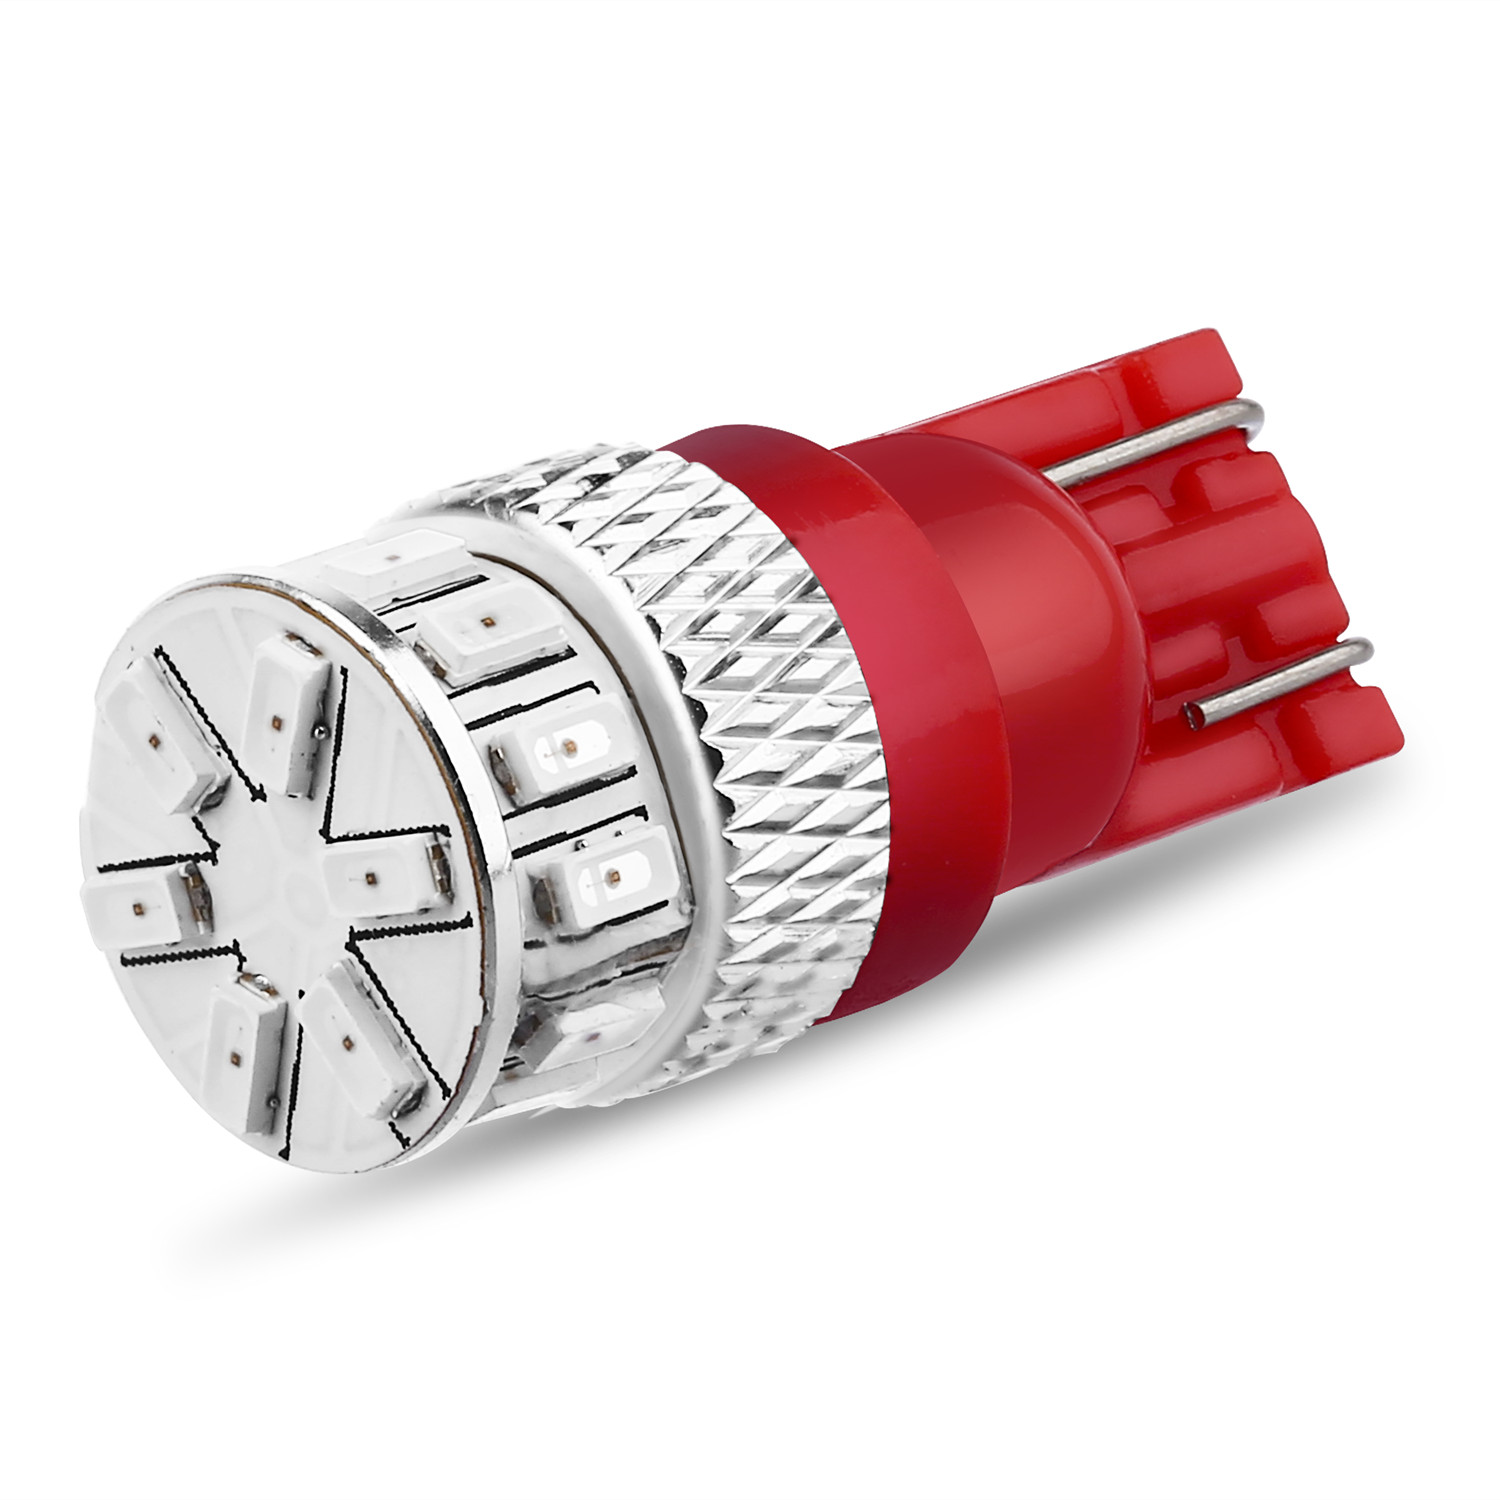 2016 Nissan Pathfinder LED Side Marker Light Bulb 12V Red 168 Replacement